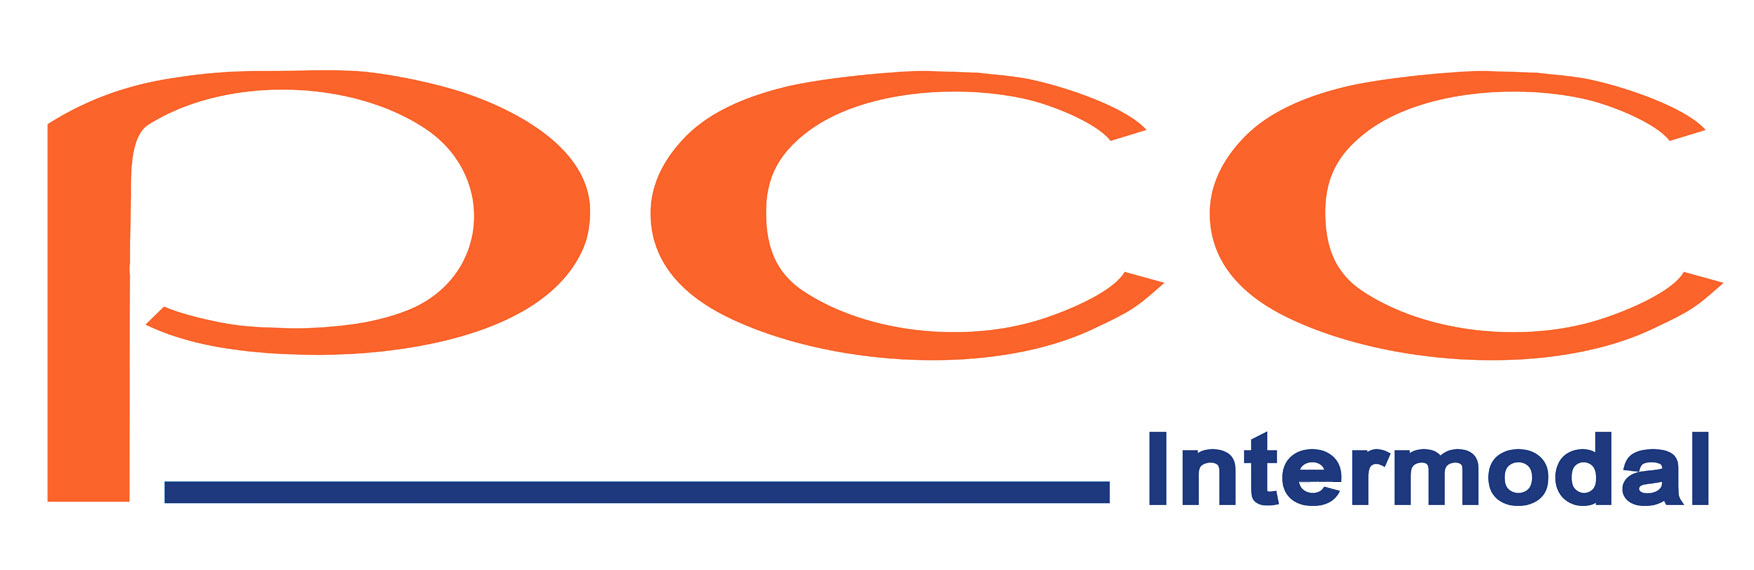 client's logo2